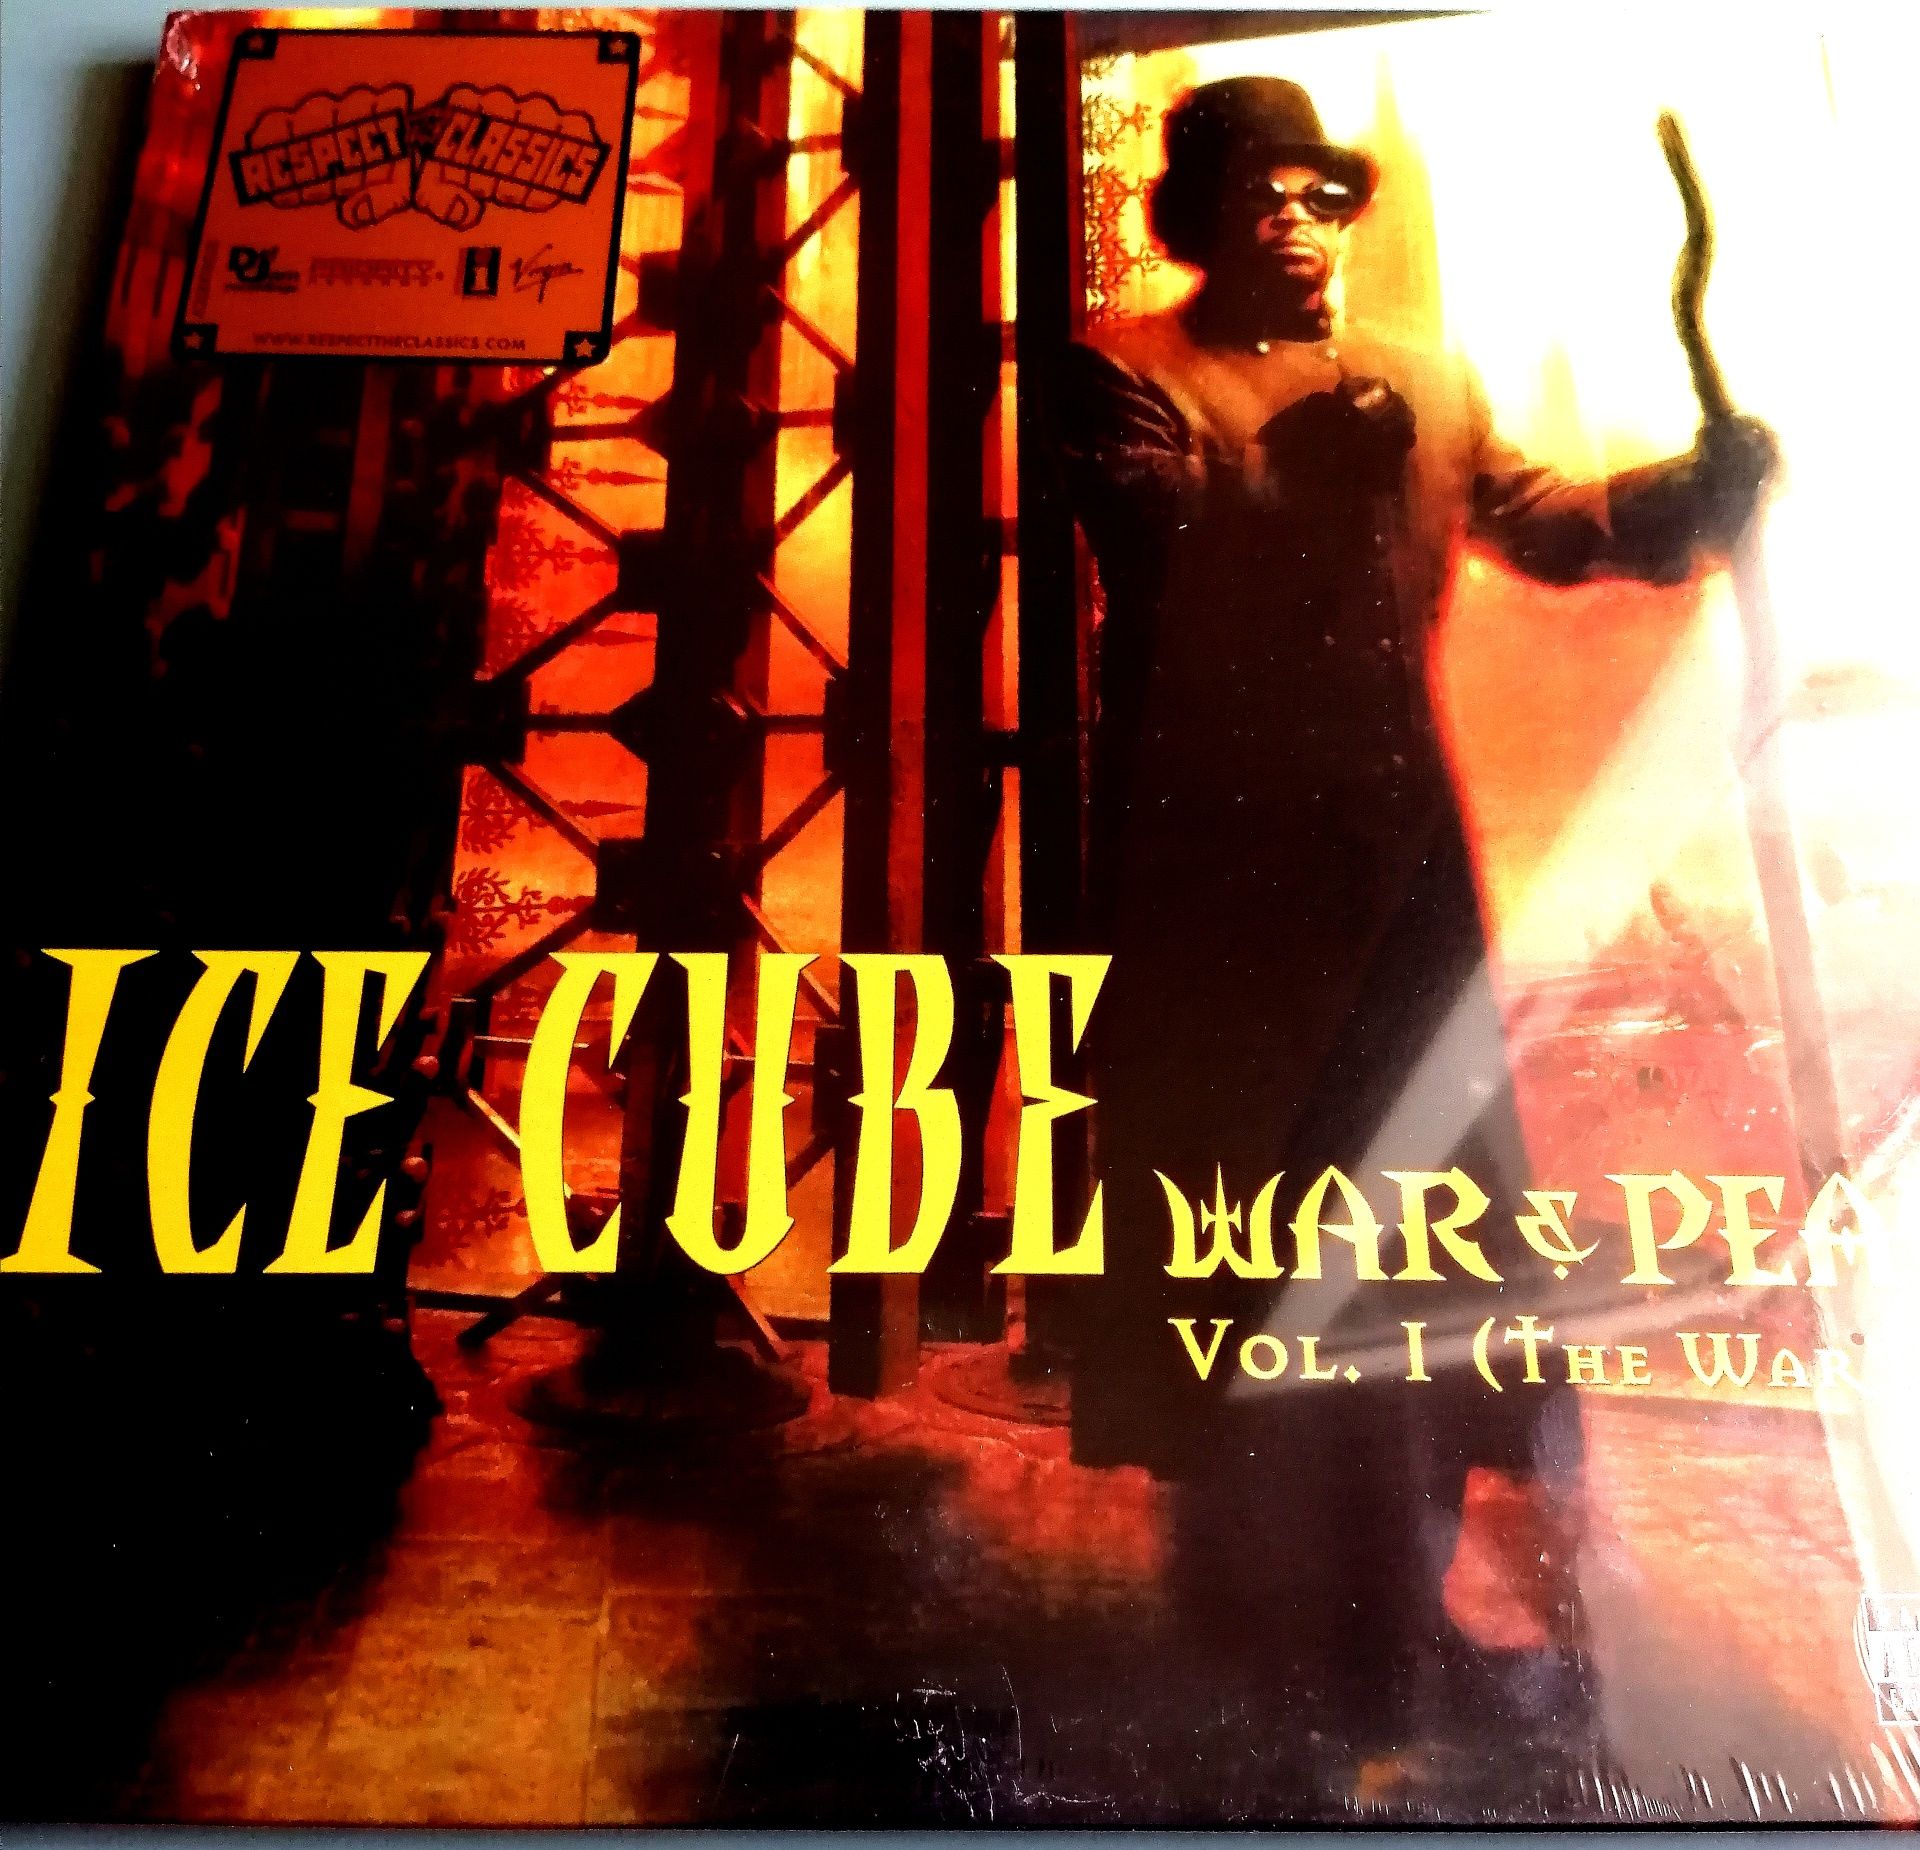 Виниловая пластинка Ice Cube Double Album "War & Peace"